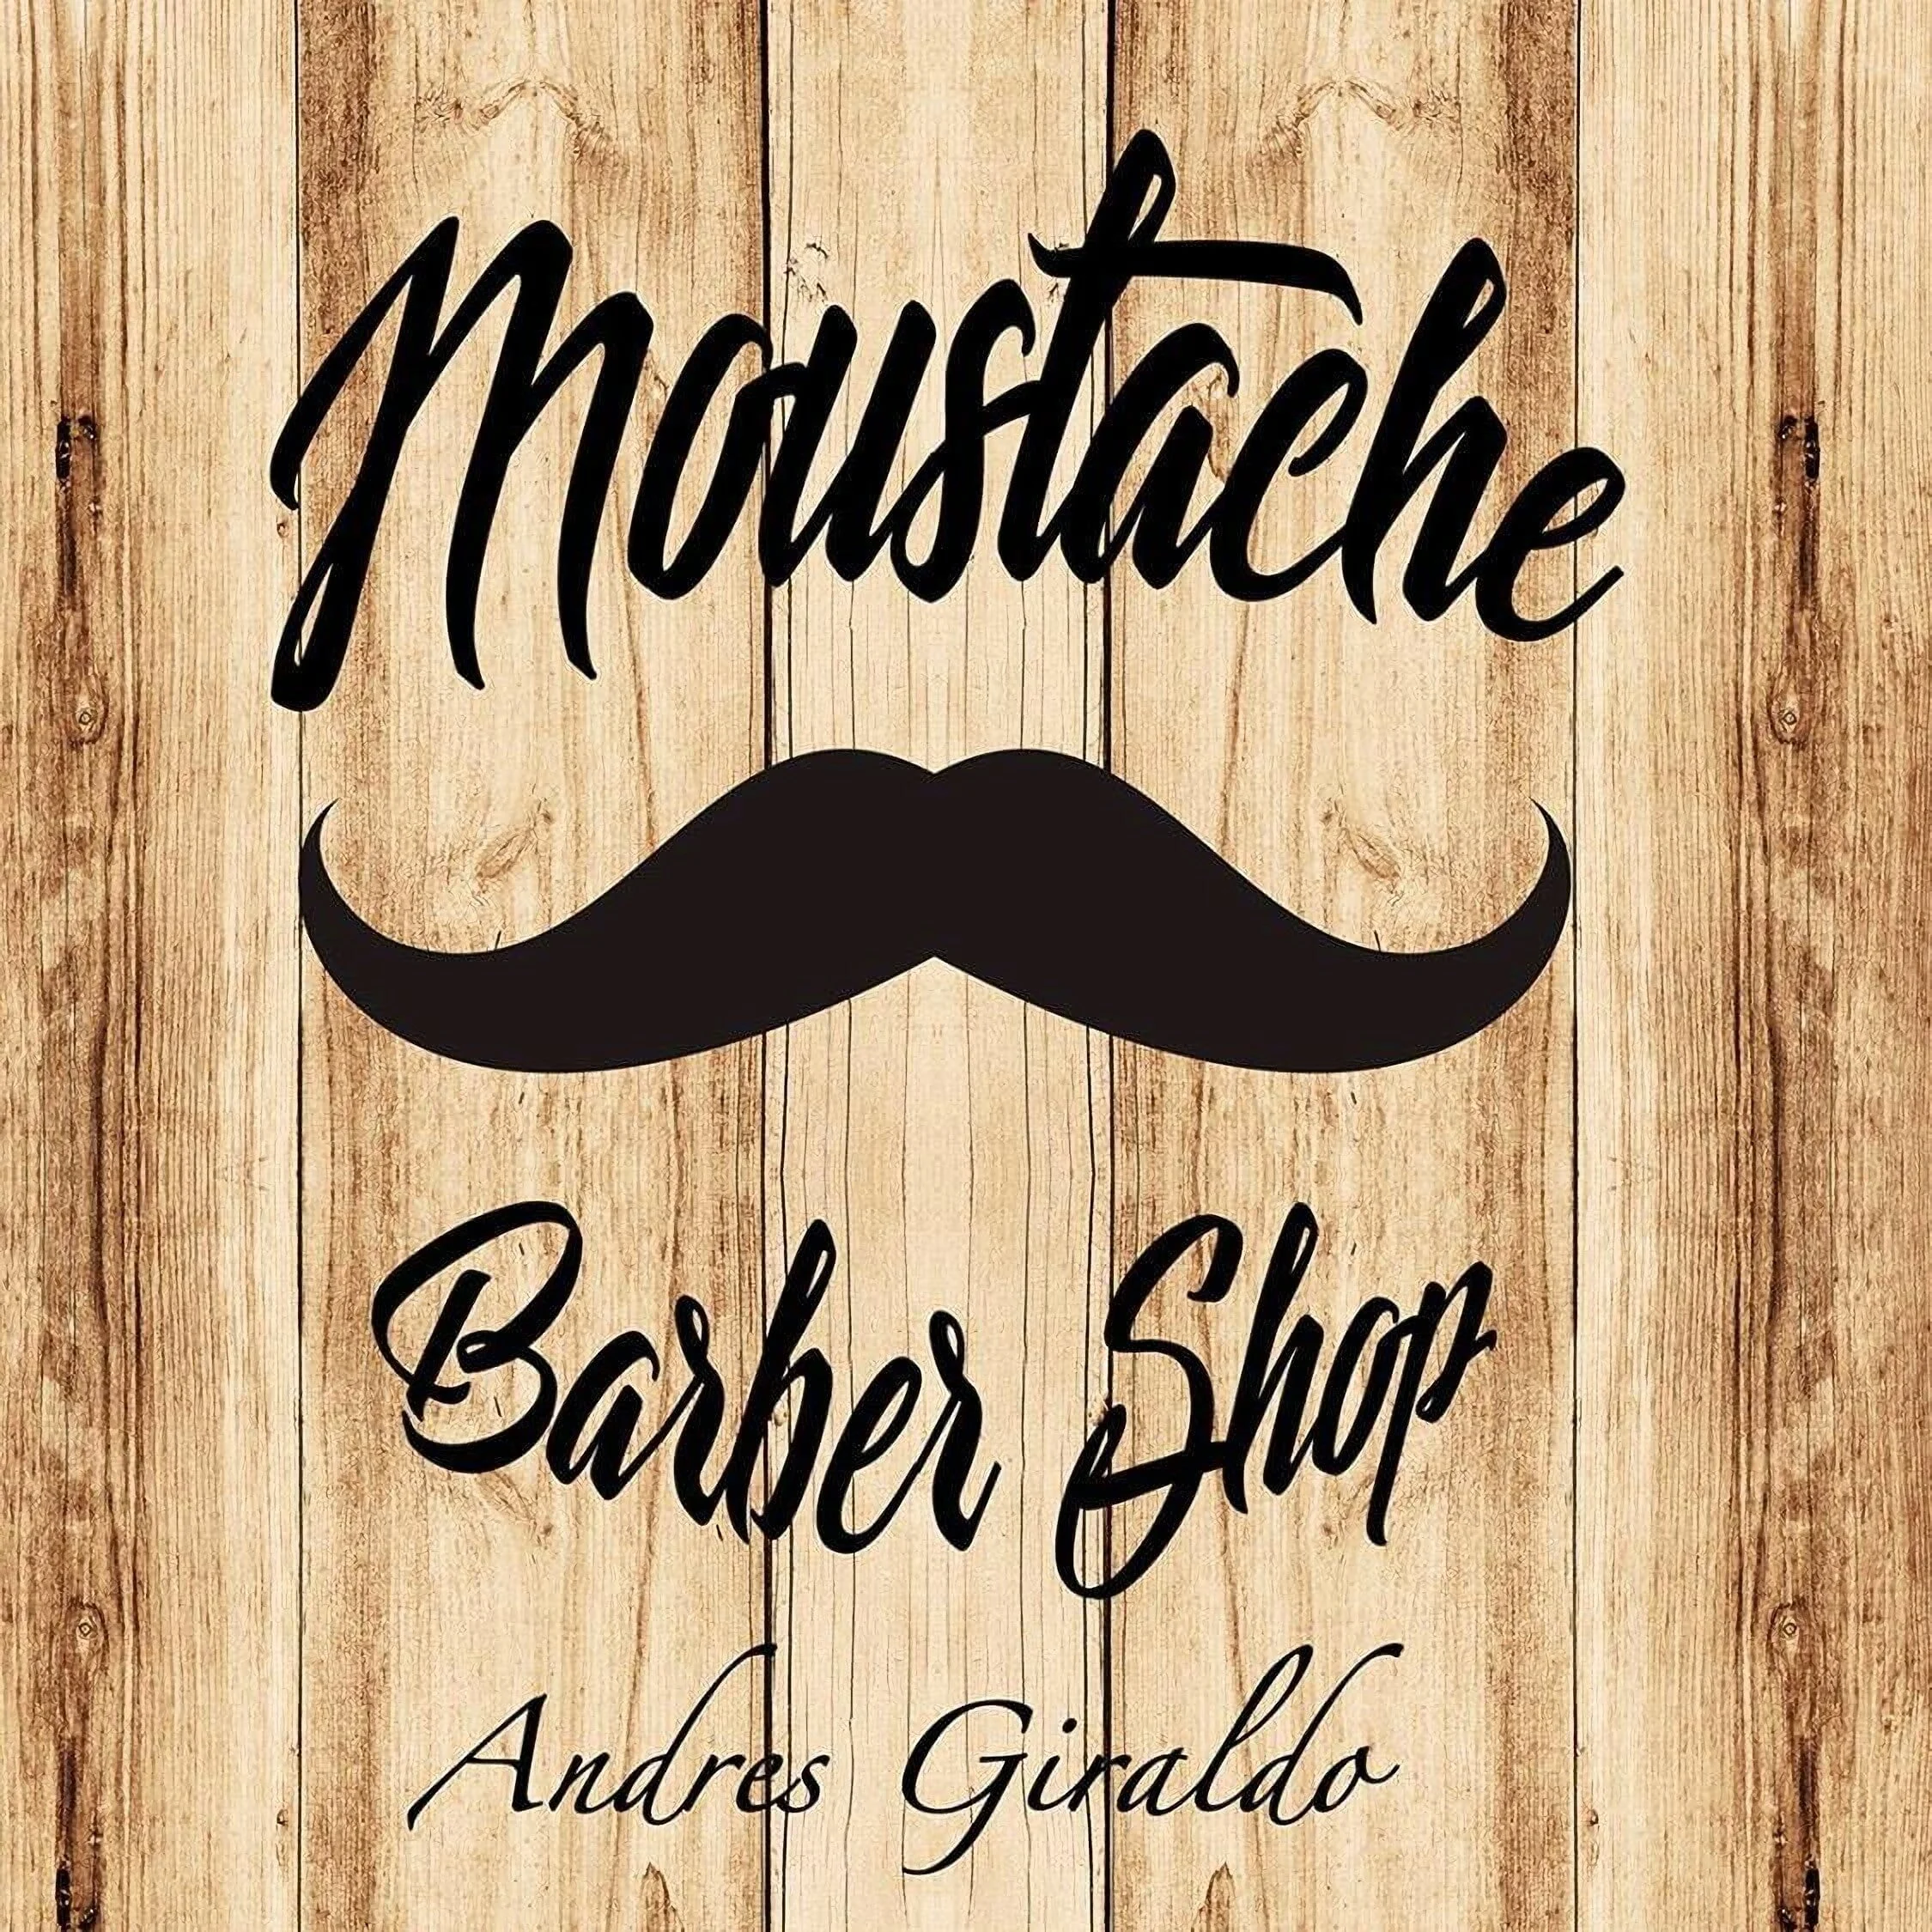 Moustache barber shop Ecuador-1869